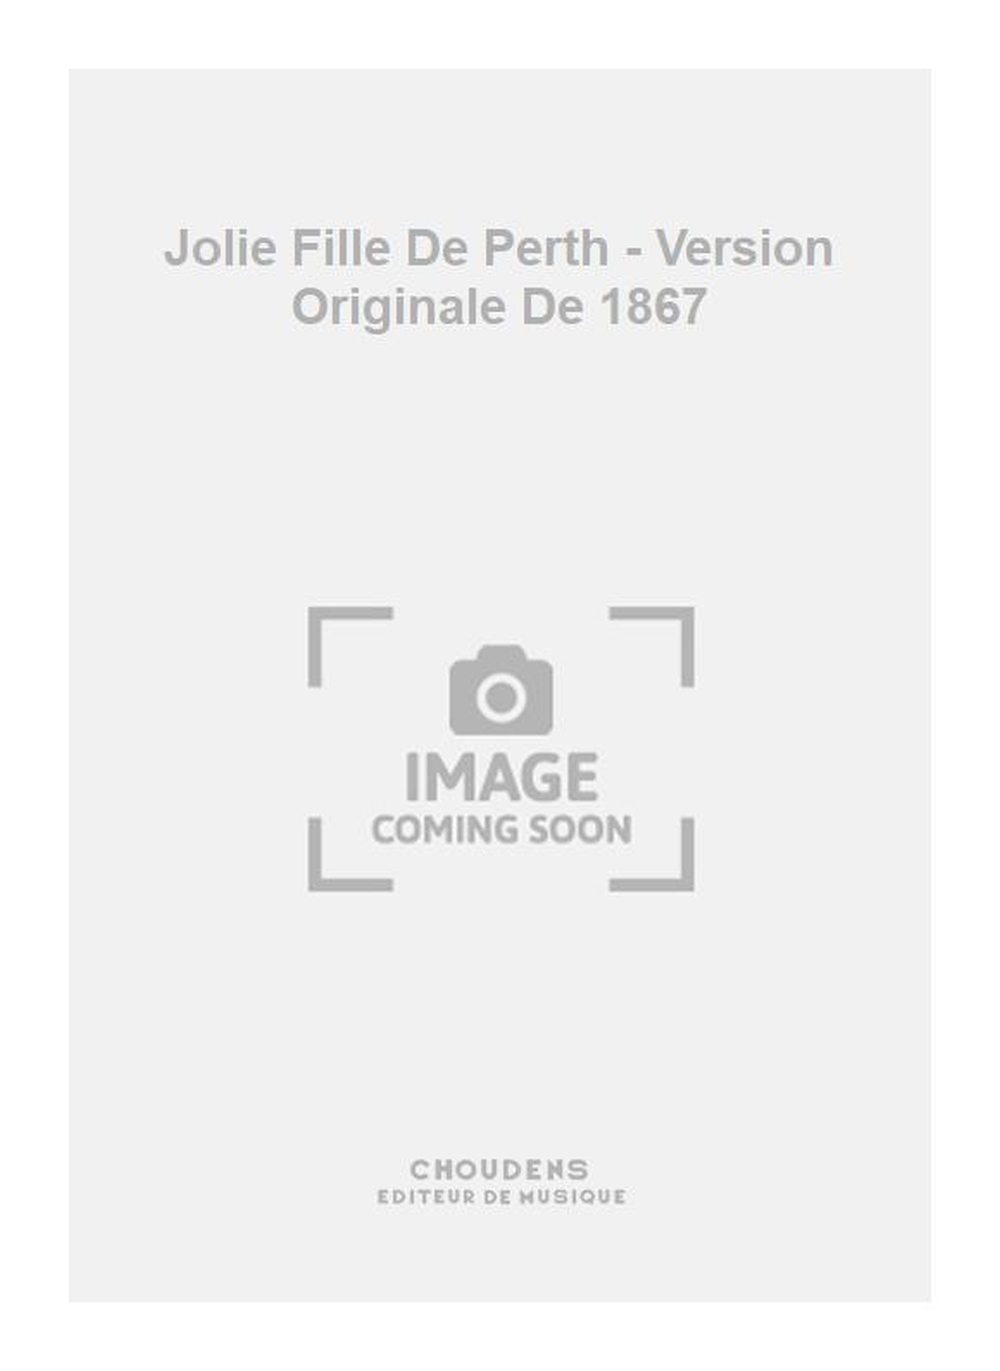 Georges Bizet: Jolie Fille De Perth - Version Originale De 1867